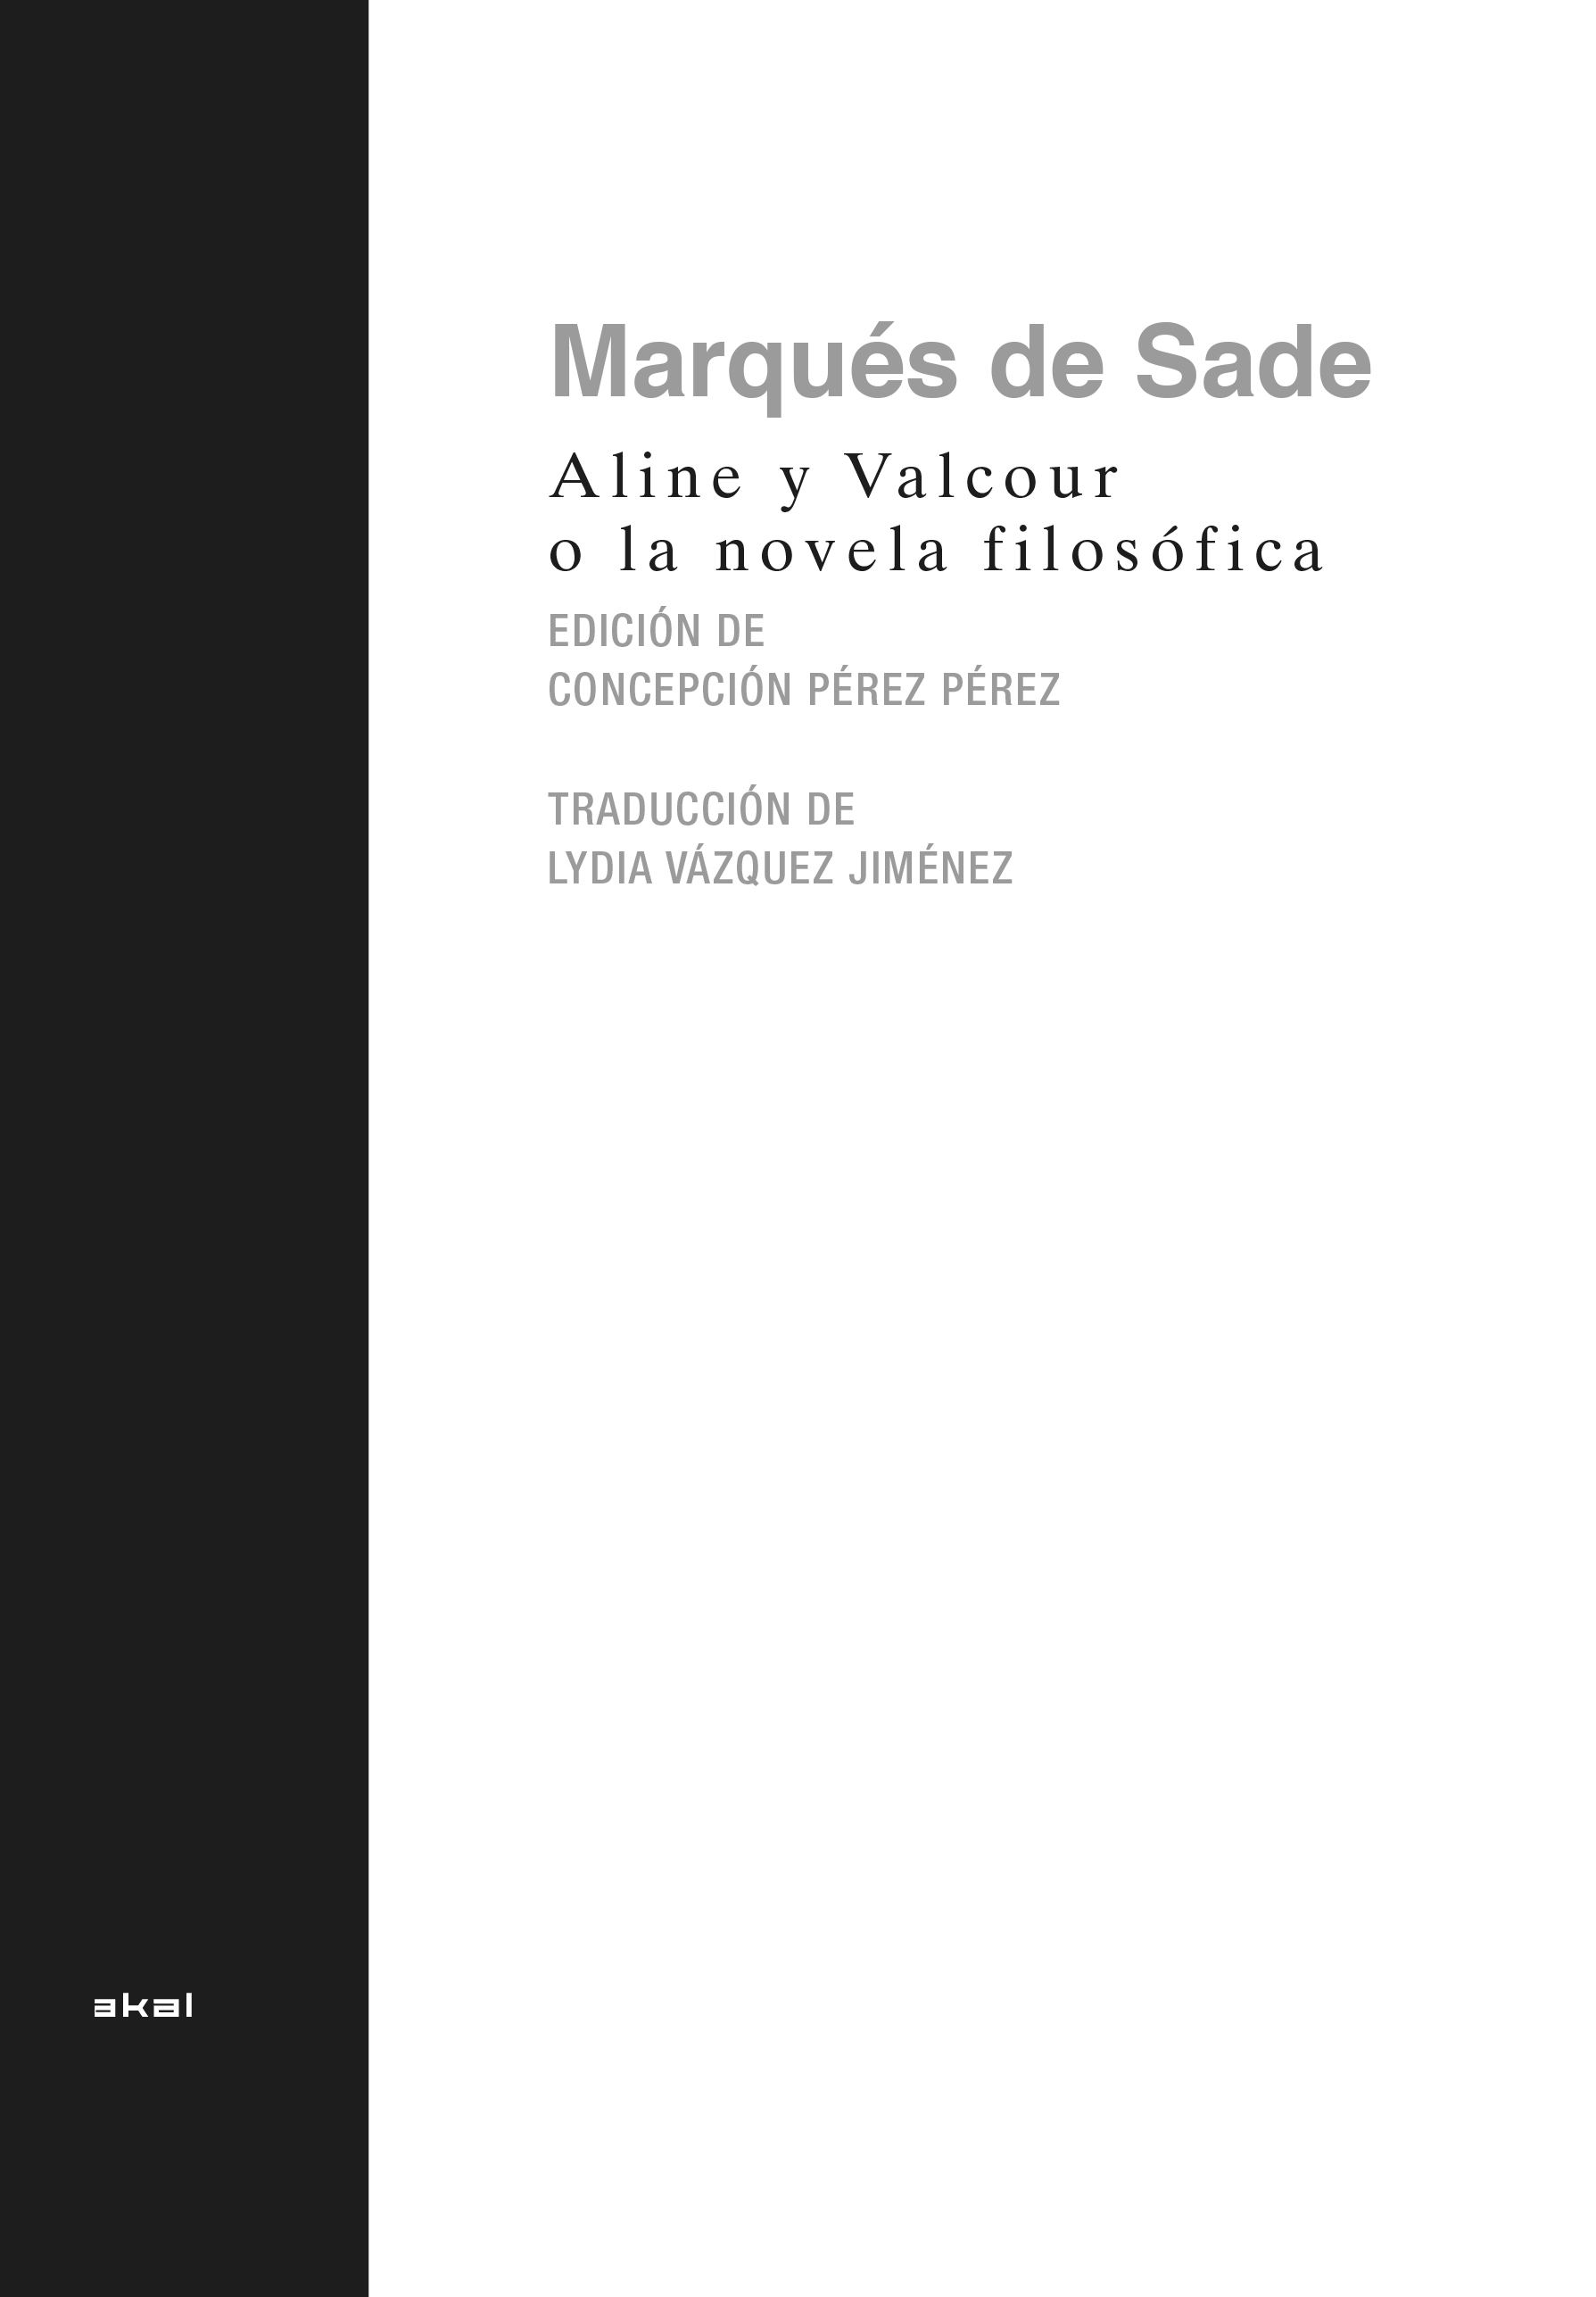 ALINE Y VALCOUR O LA NOVELA FILOSÓFICA - Marques De Sade